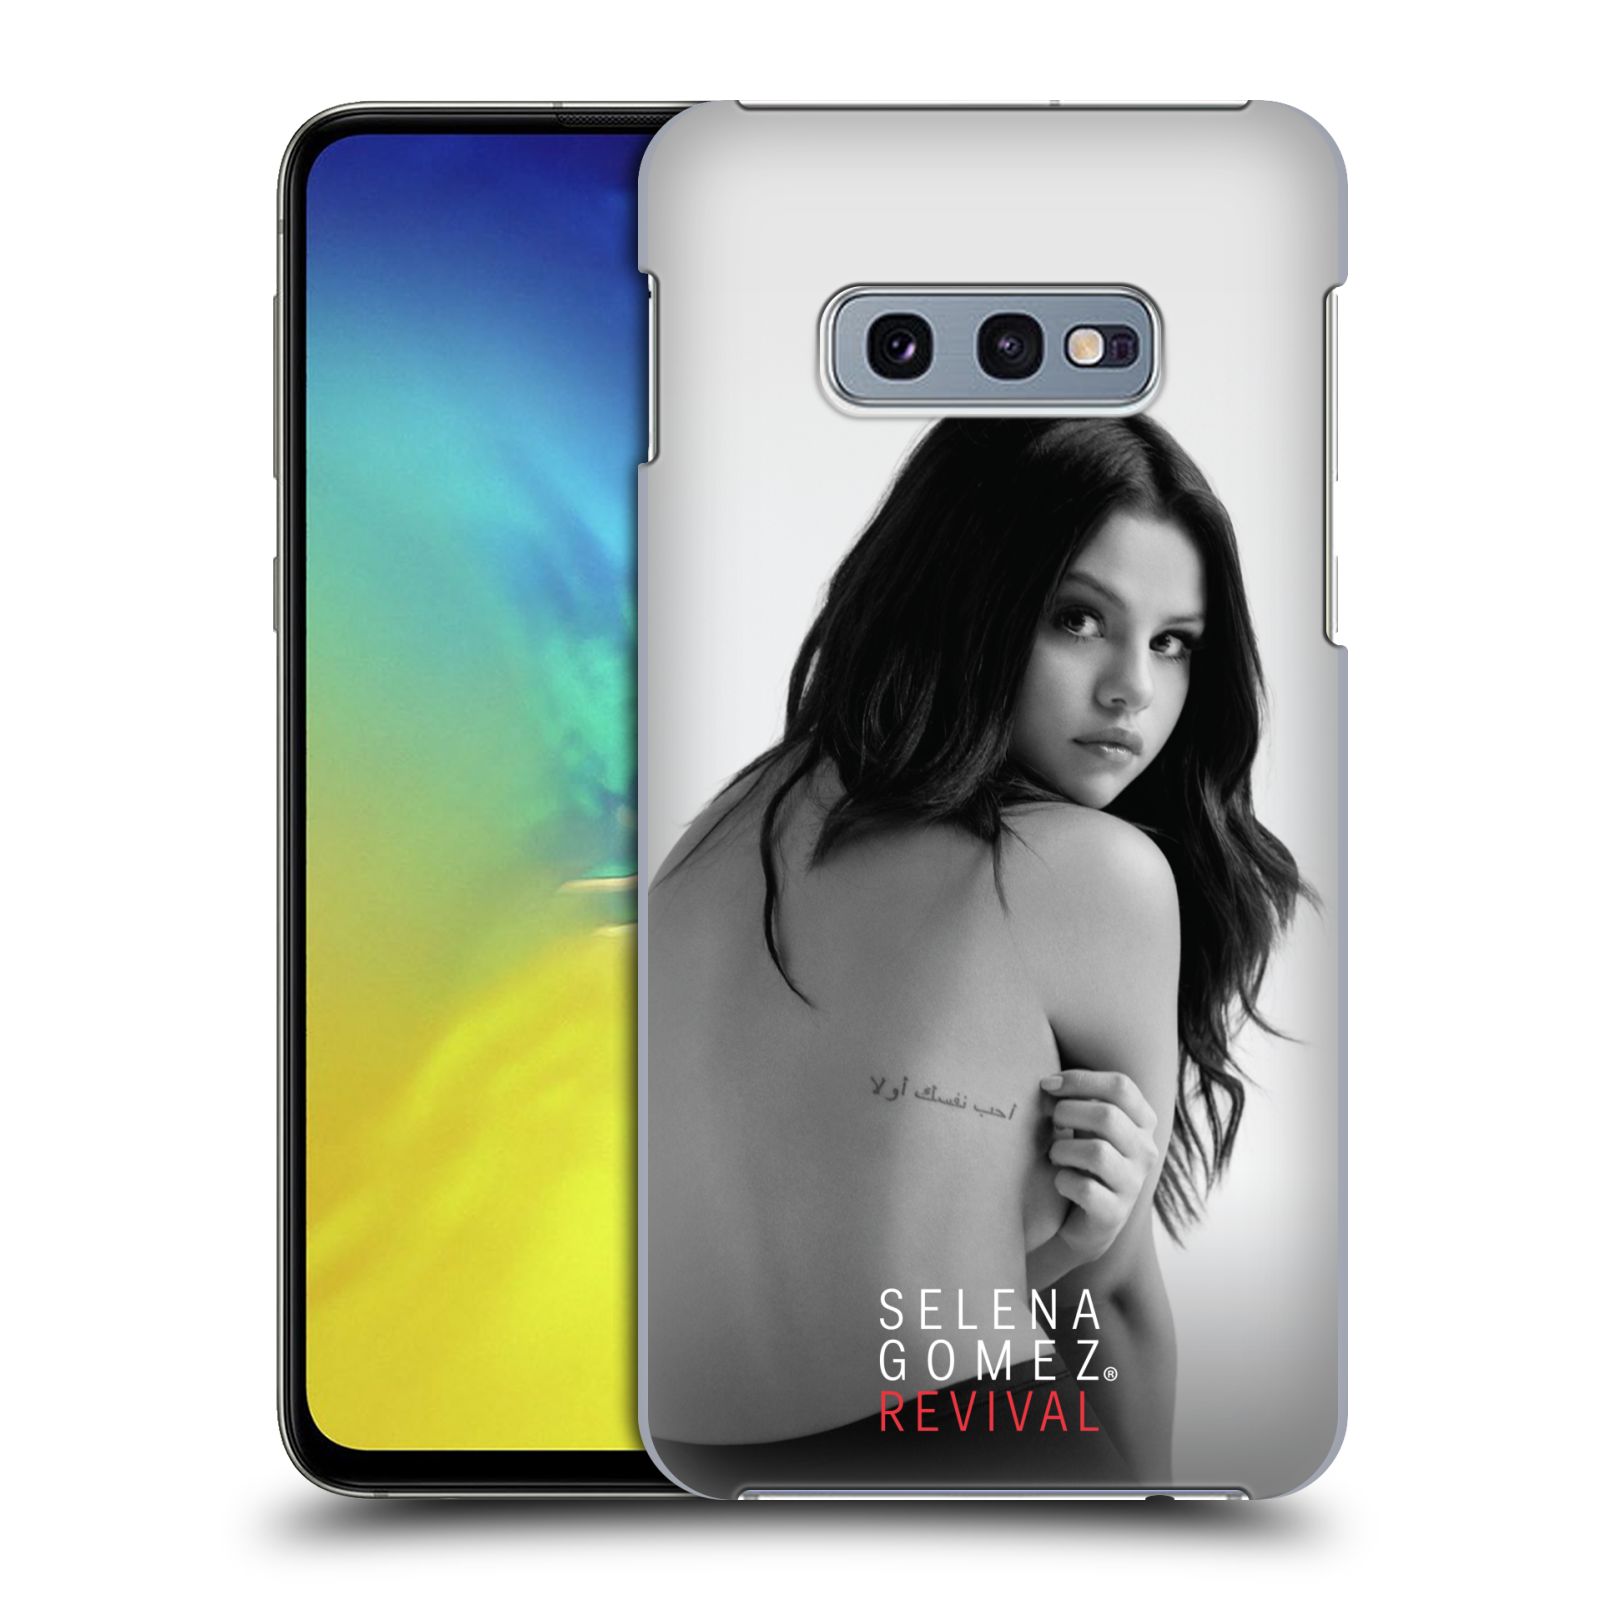 Pouzdro na mobil Samsung Galaxy S10e - HEAD CASE - Zpěvačka Selena Gomez foto Revival zadní strana